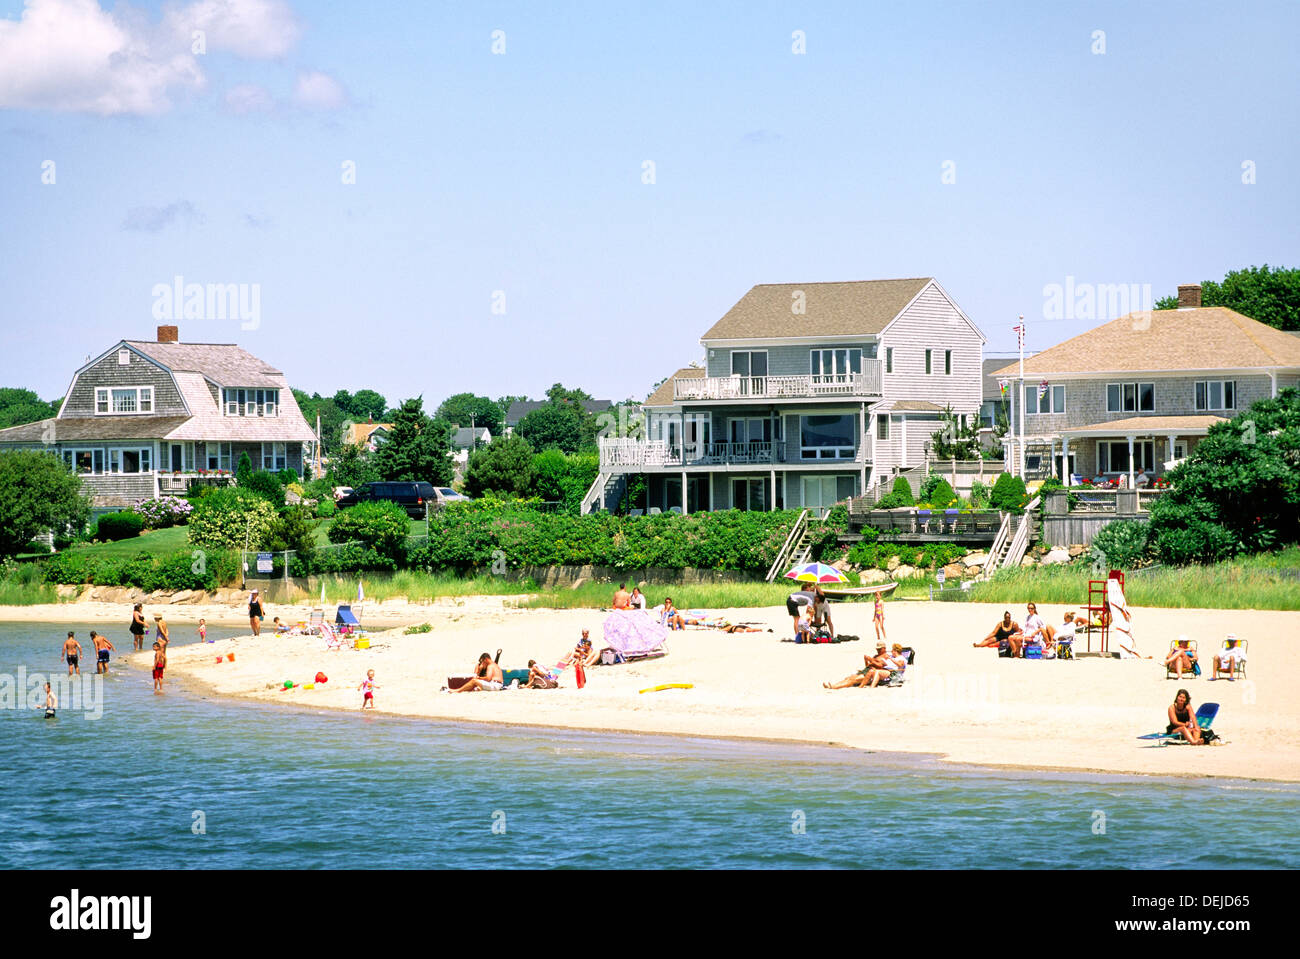 Port de Hyannis, Cape Cod, New England, Massachusetts, USA. Privé typique de maisons, d'appartements, condos et personnes sur la plage Banque D'Images